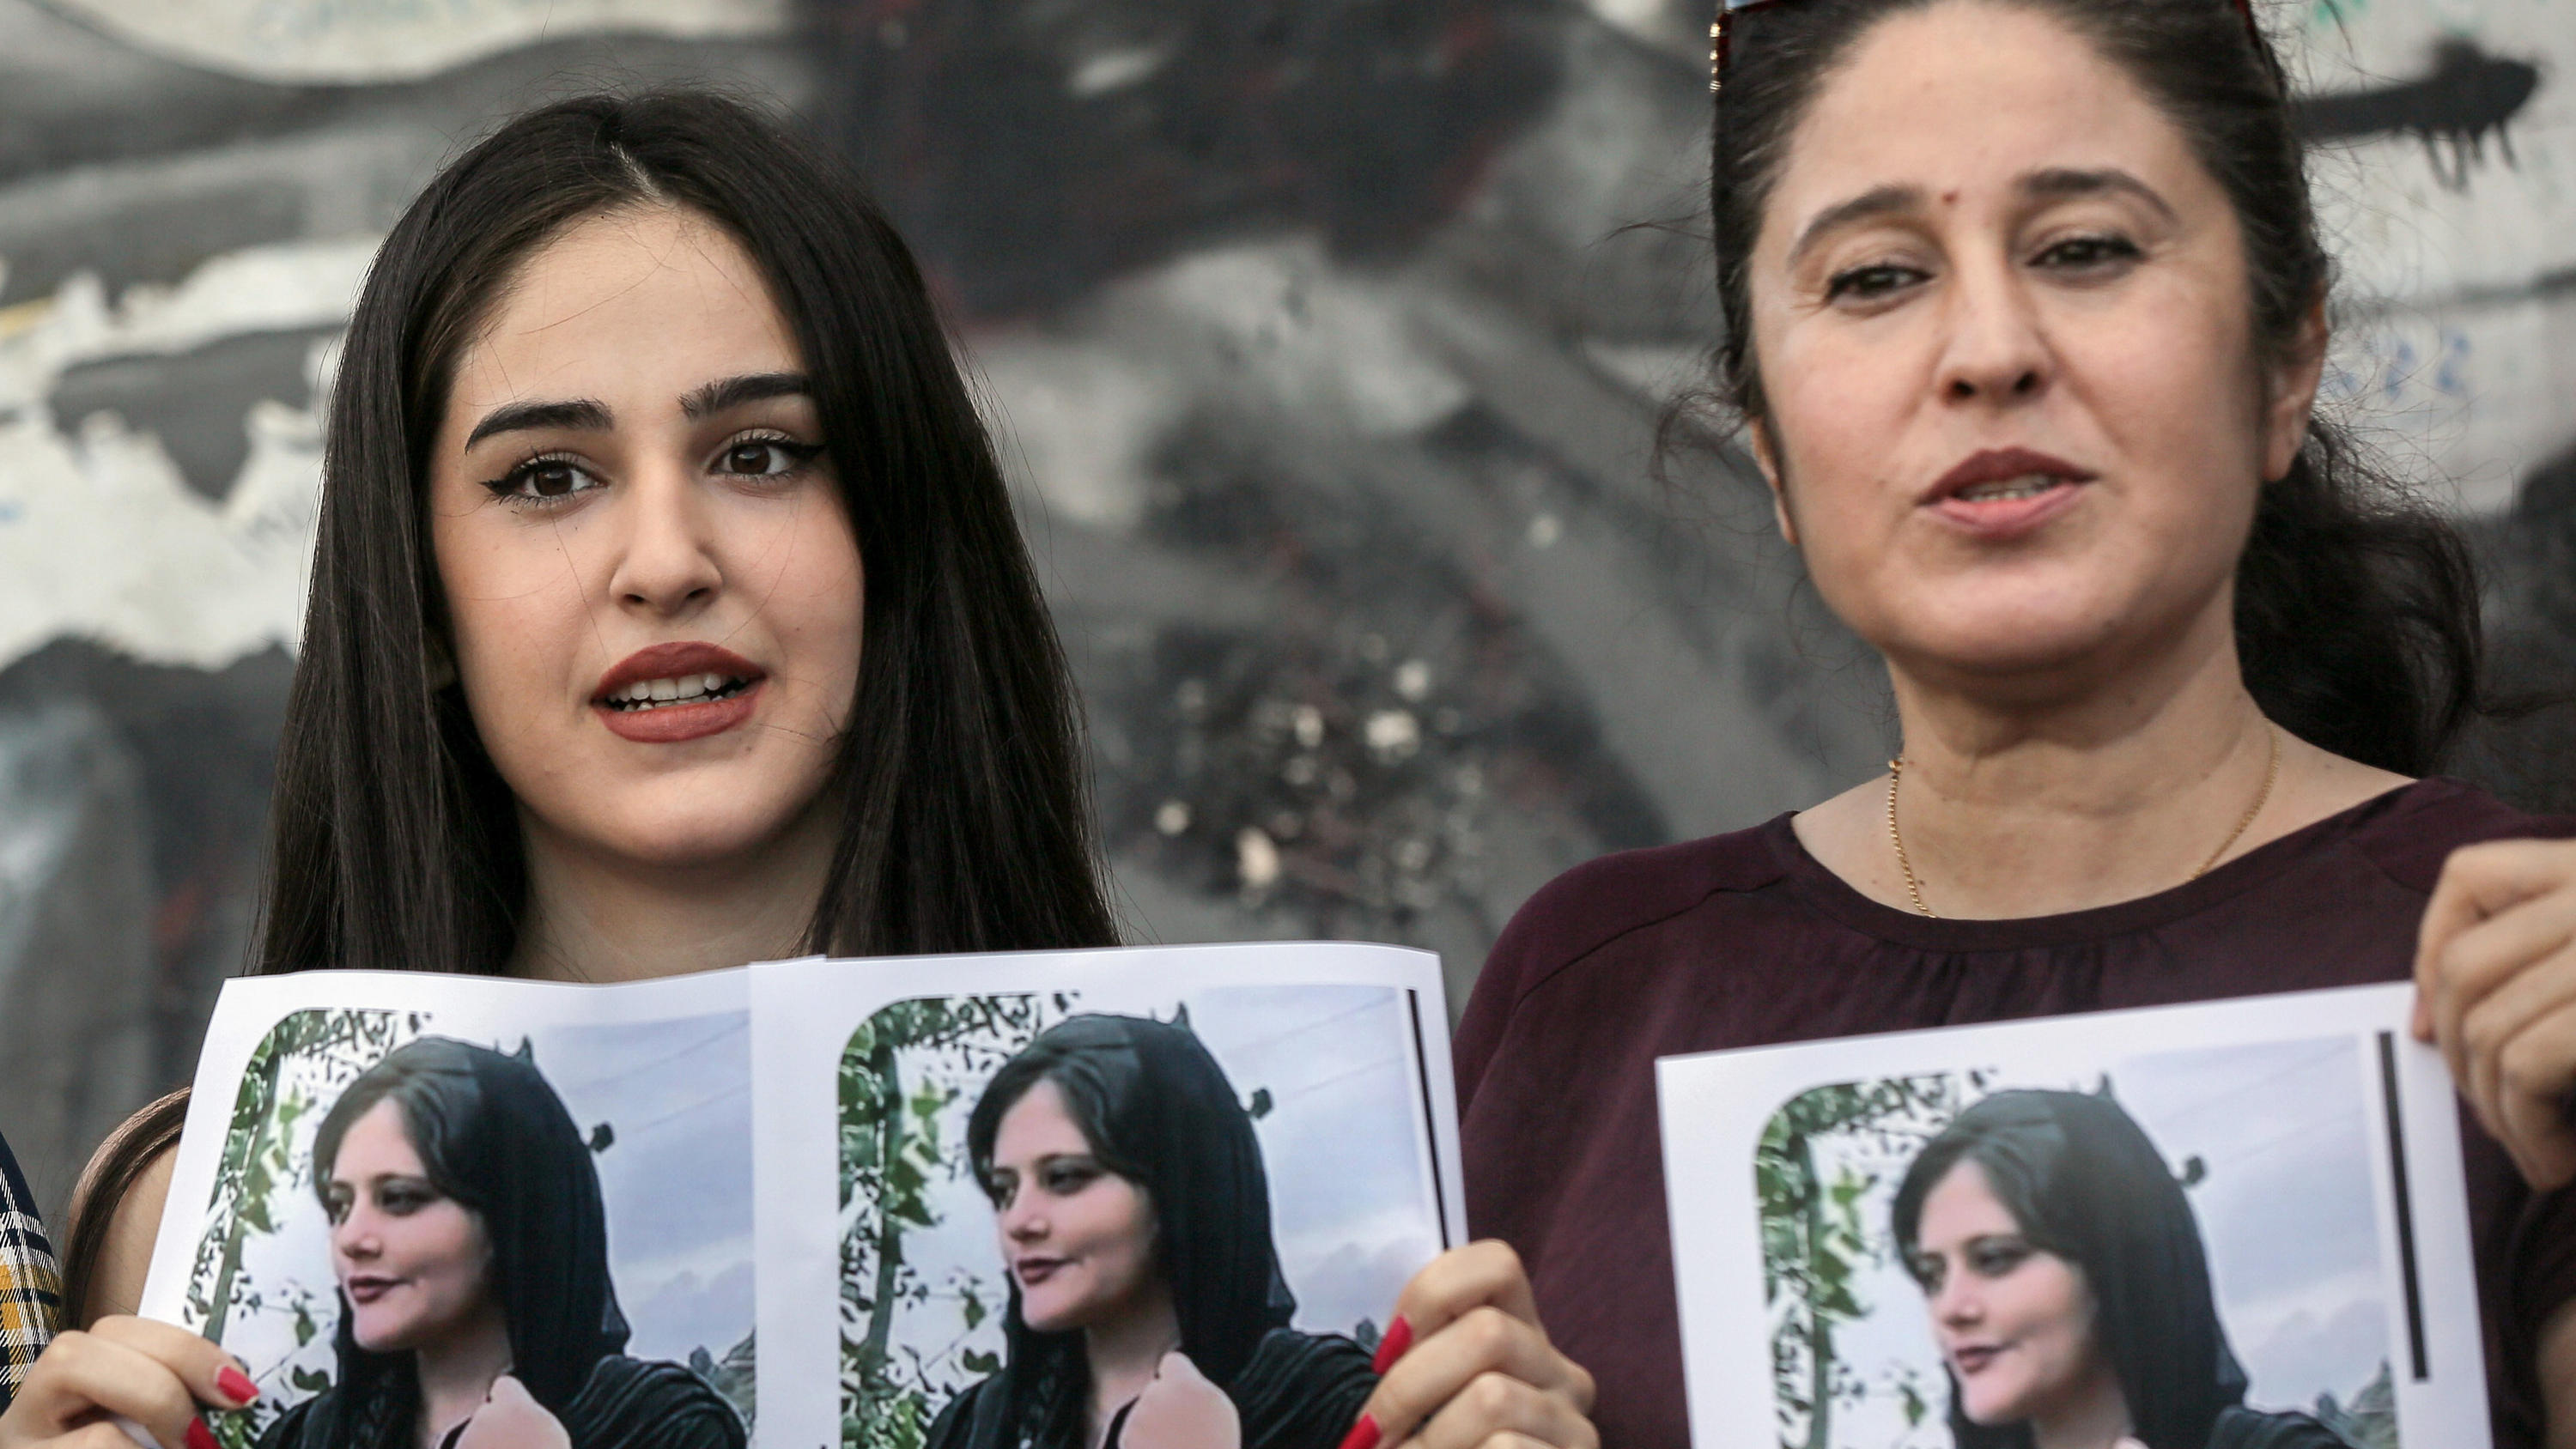 21.09.2022, Libanon, Beirut: Kurdische Frauen halten Bilder von der verstorbenen Iranerin Mahasa Amini.Auslöser der Proteste ist der Tod der 22-jährigen Mahsa Amini. Sie war vor gut einer Woche von der Sittenpolizei wegen ihres «unislamischen Outfits